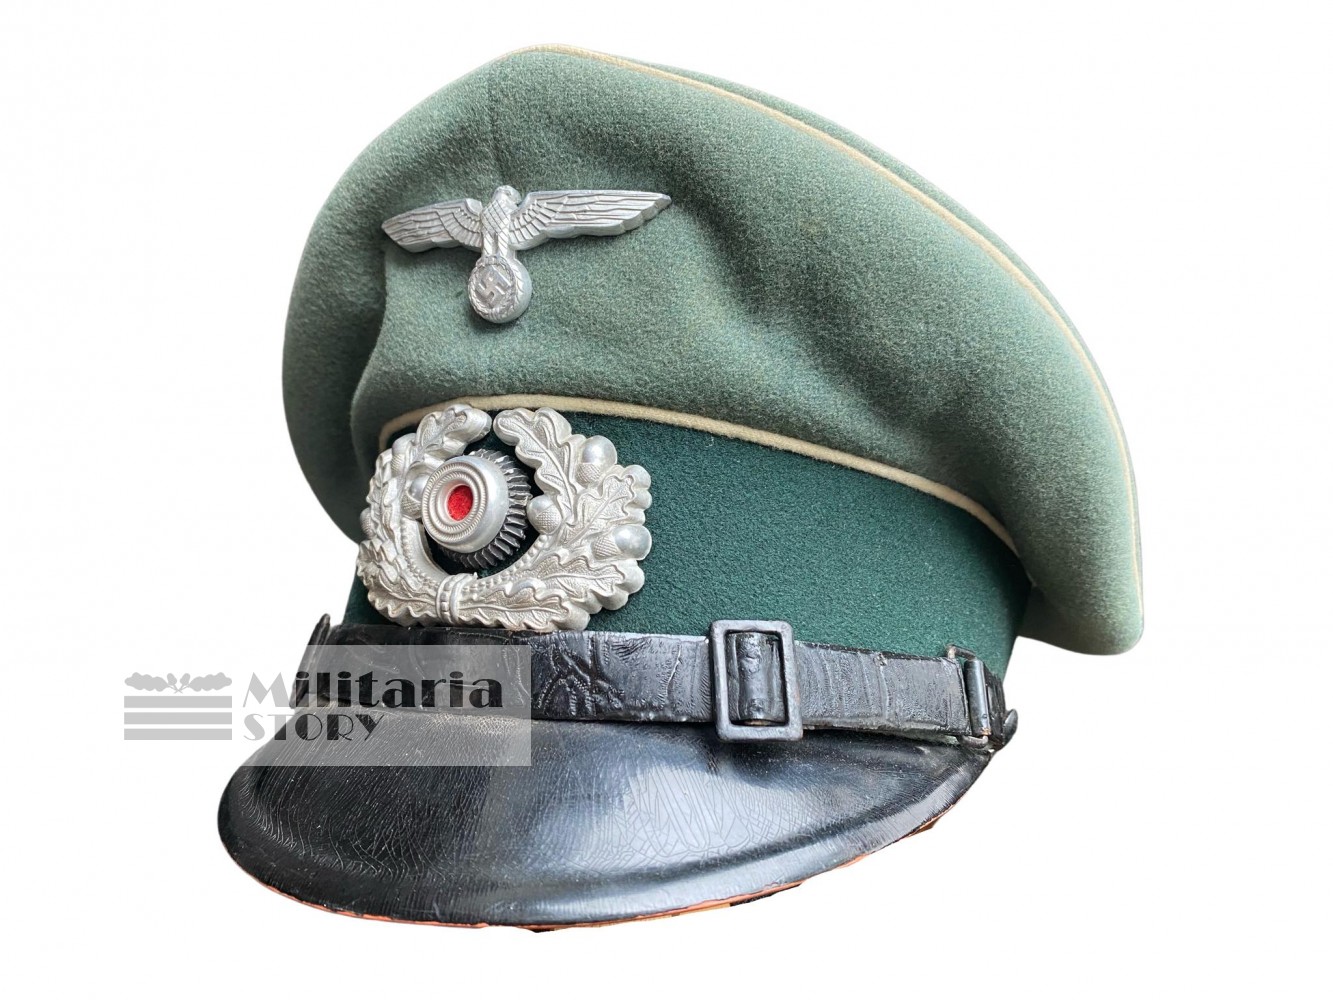 Heer NCO Infantry visor cap - Heer NCO Infantry visor cap: German Headgear